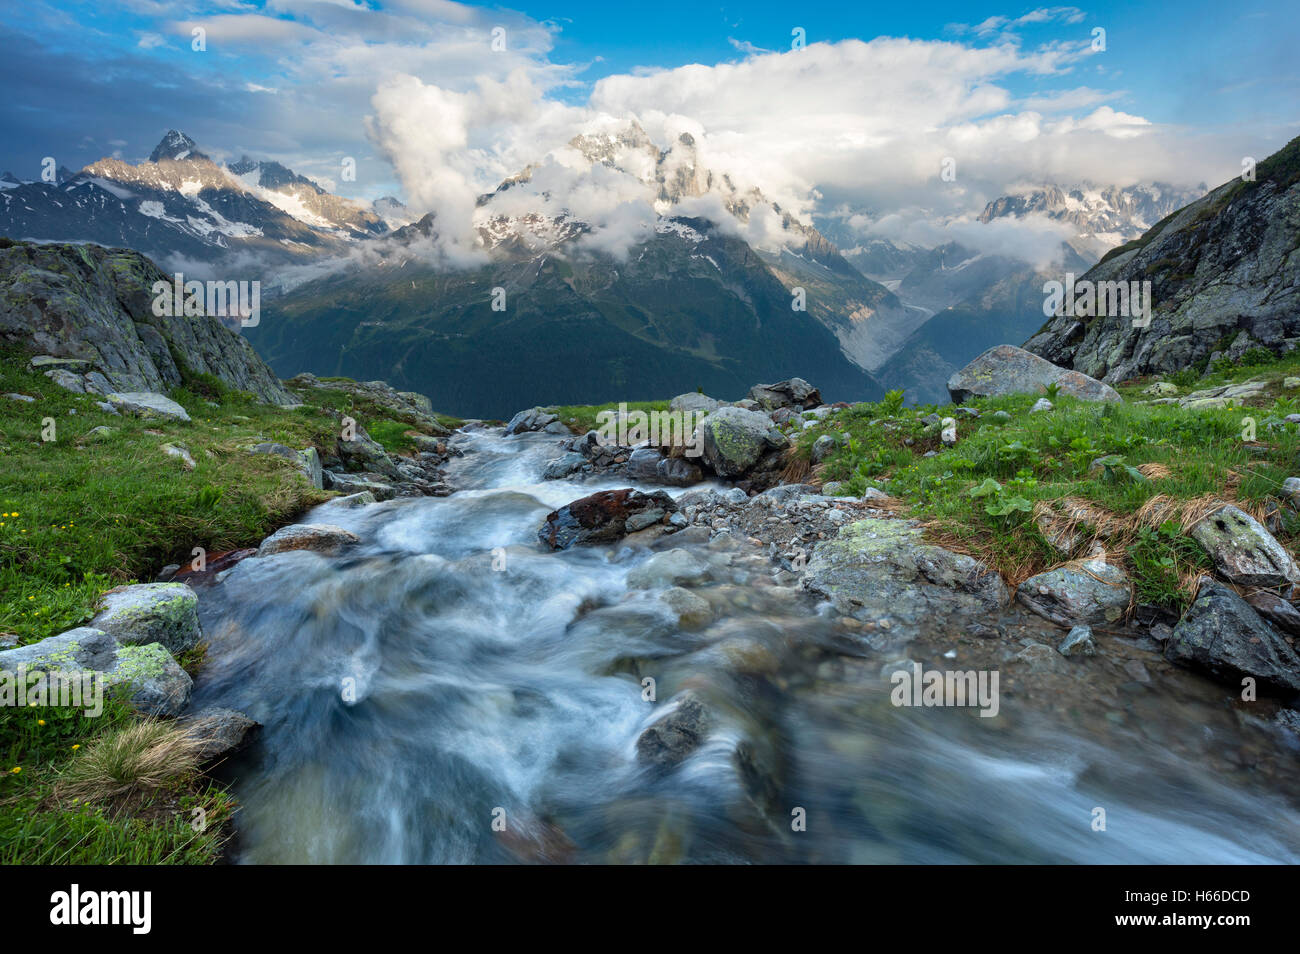 Stream sous Aiguille Verte, vallée de Chamonix, Alpes, France. Banque D'Images